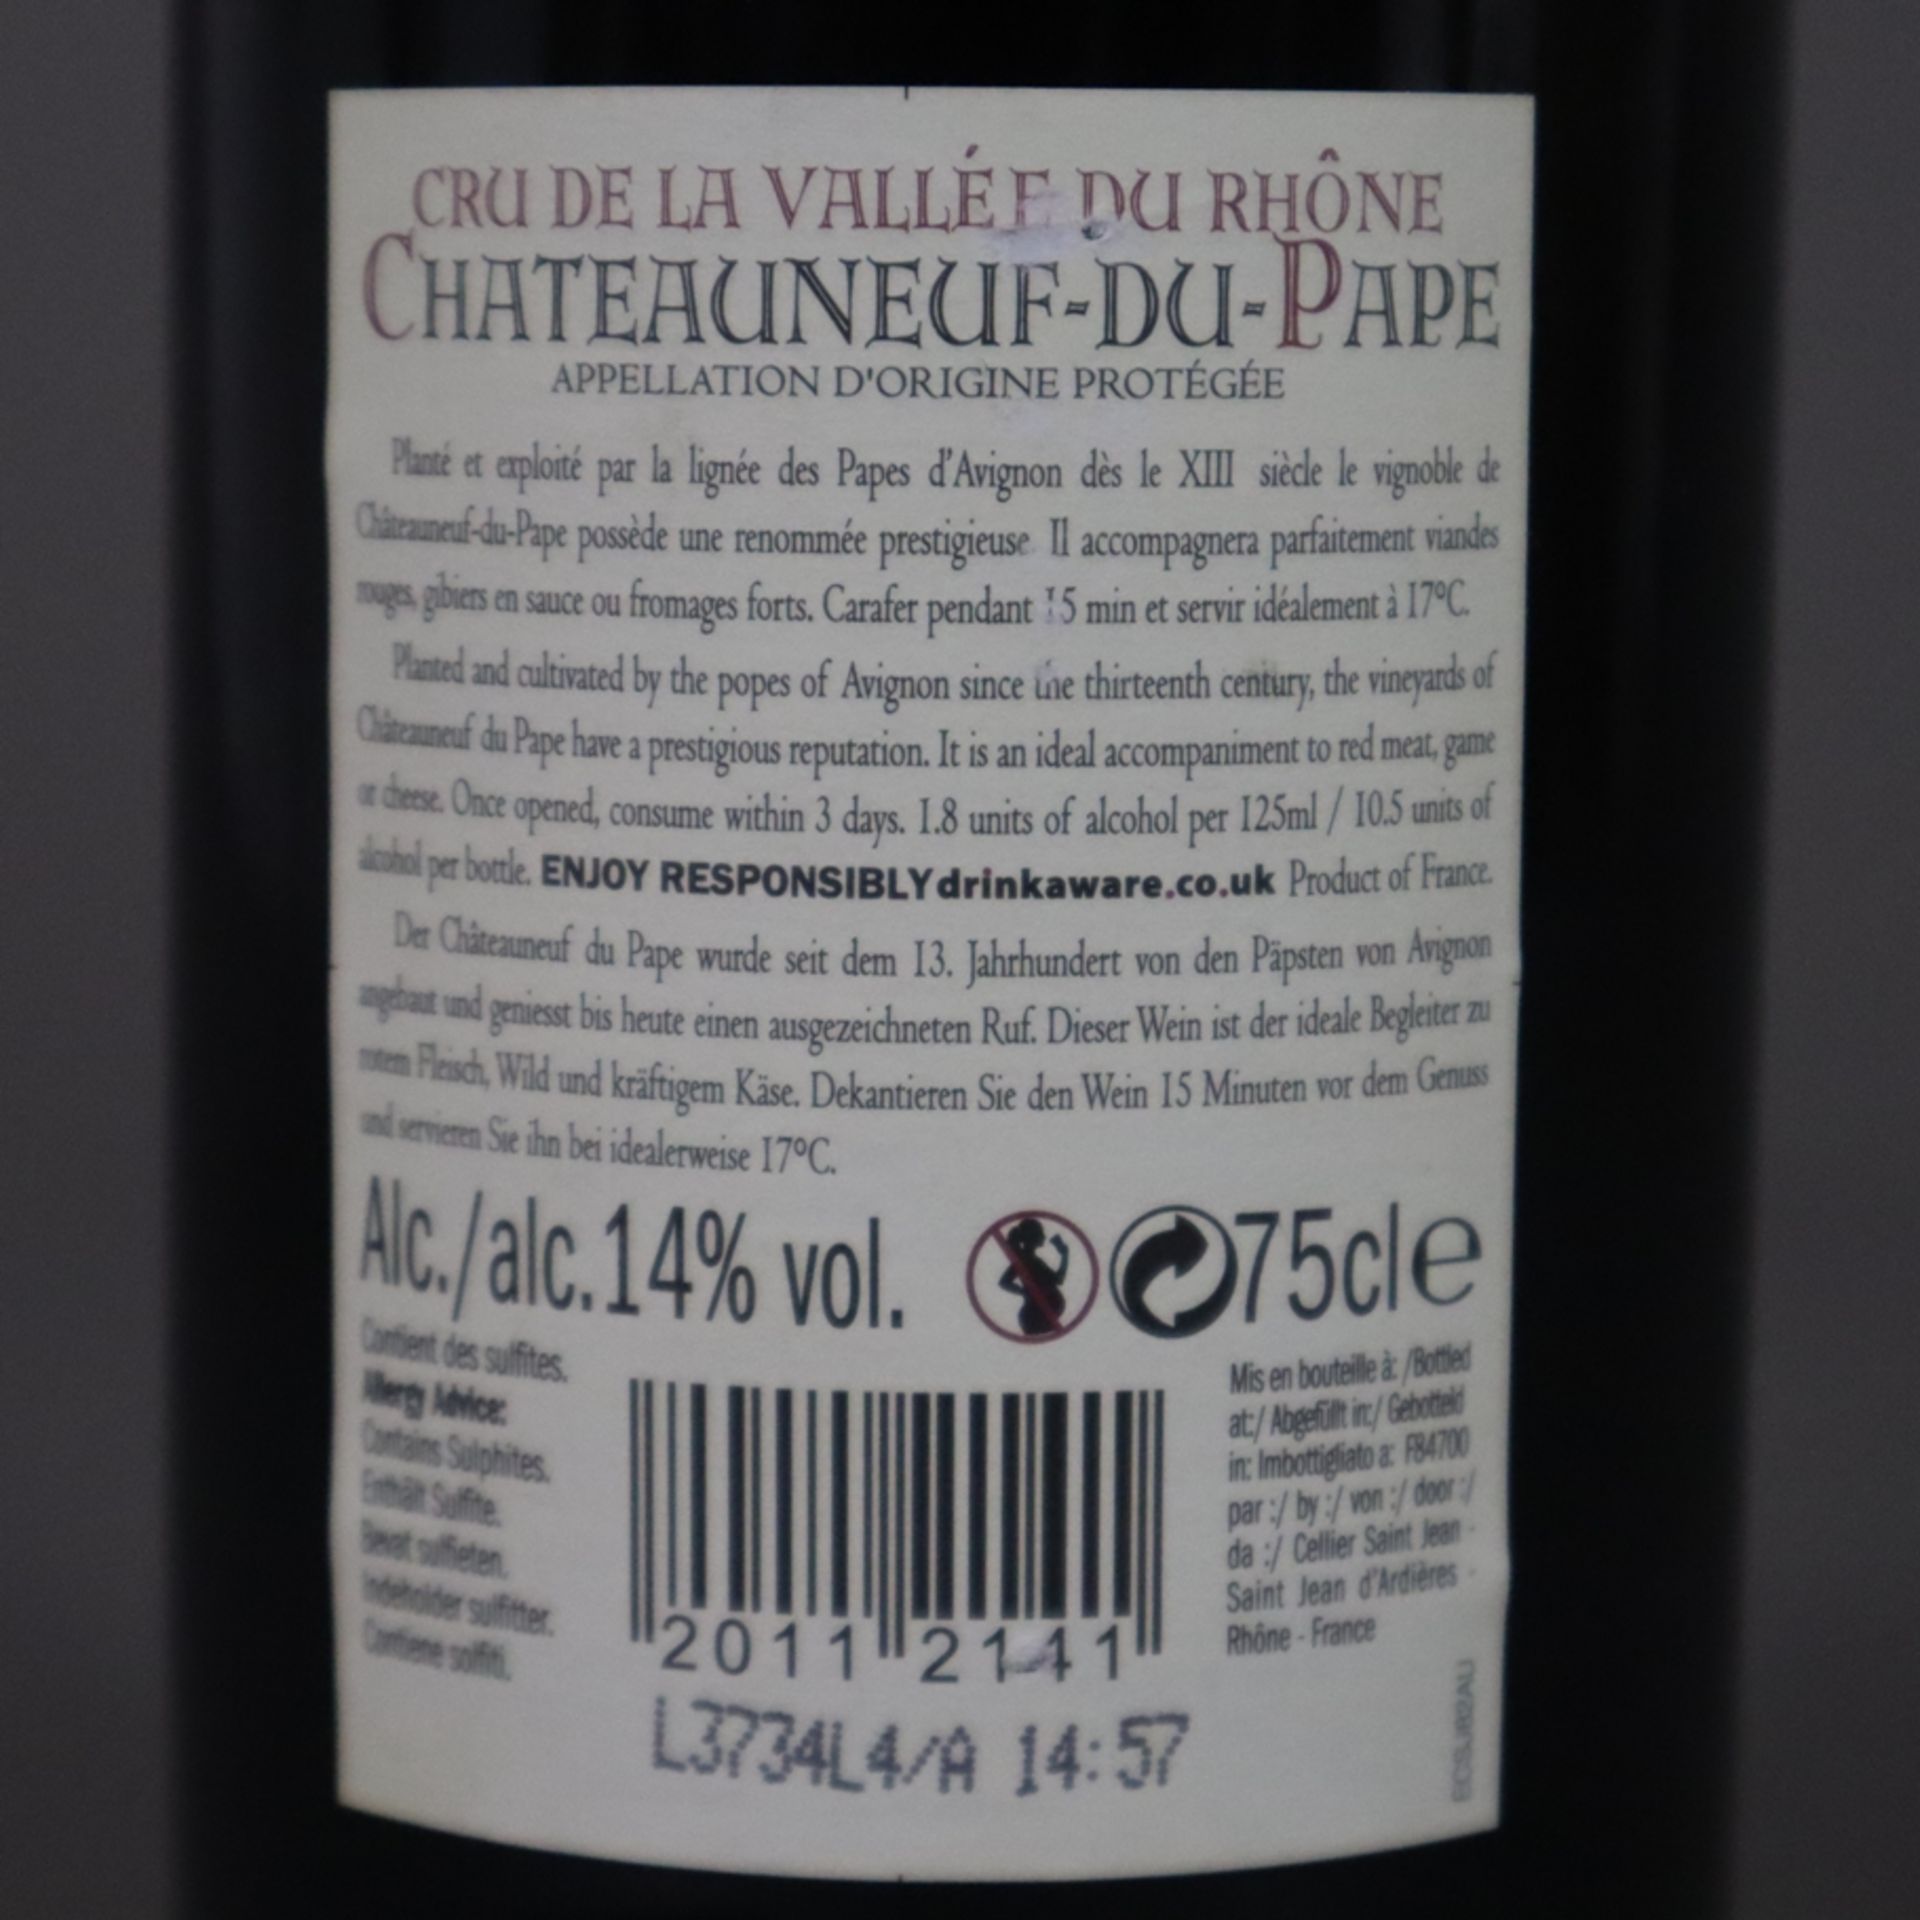 Wein - 2012 Cru de la Vallée du Rhône Châteauneuf-du-Pape Rhône, France, 75 cl, 14% - Image 6 of 6